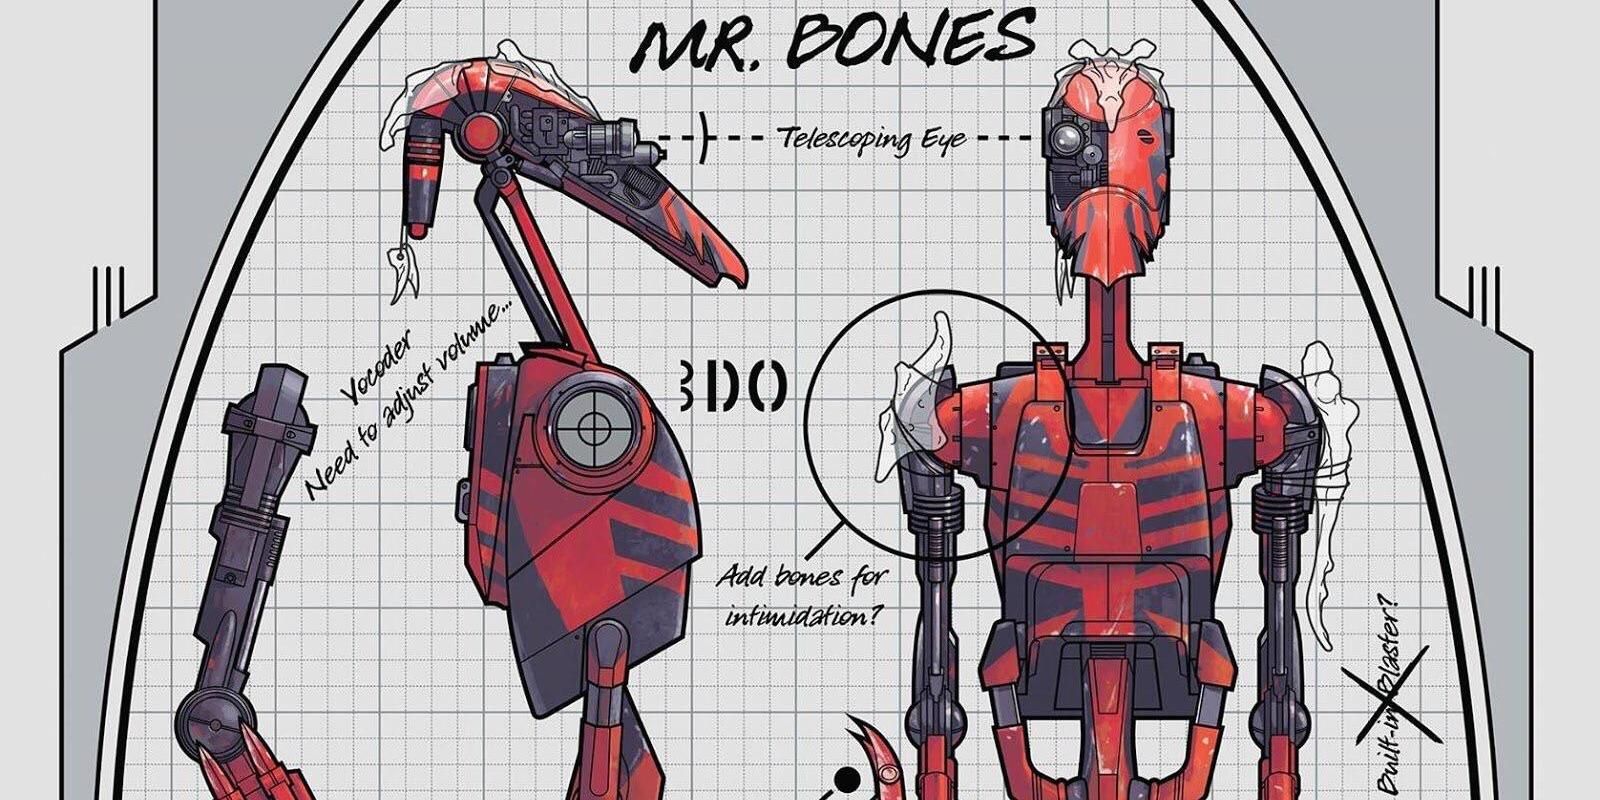 Mister Bones